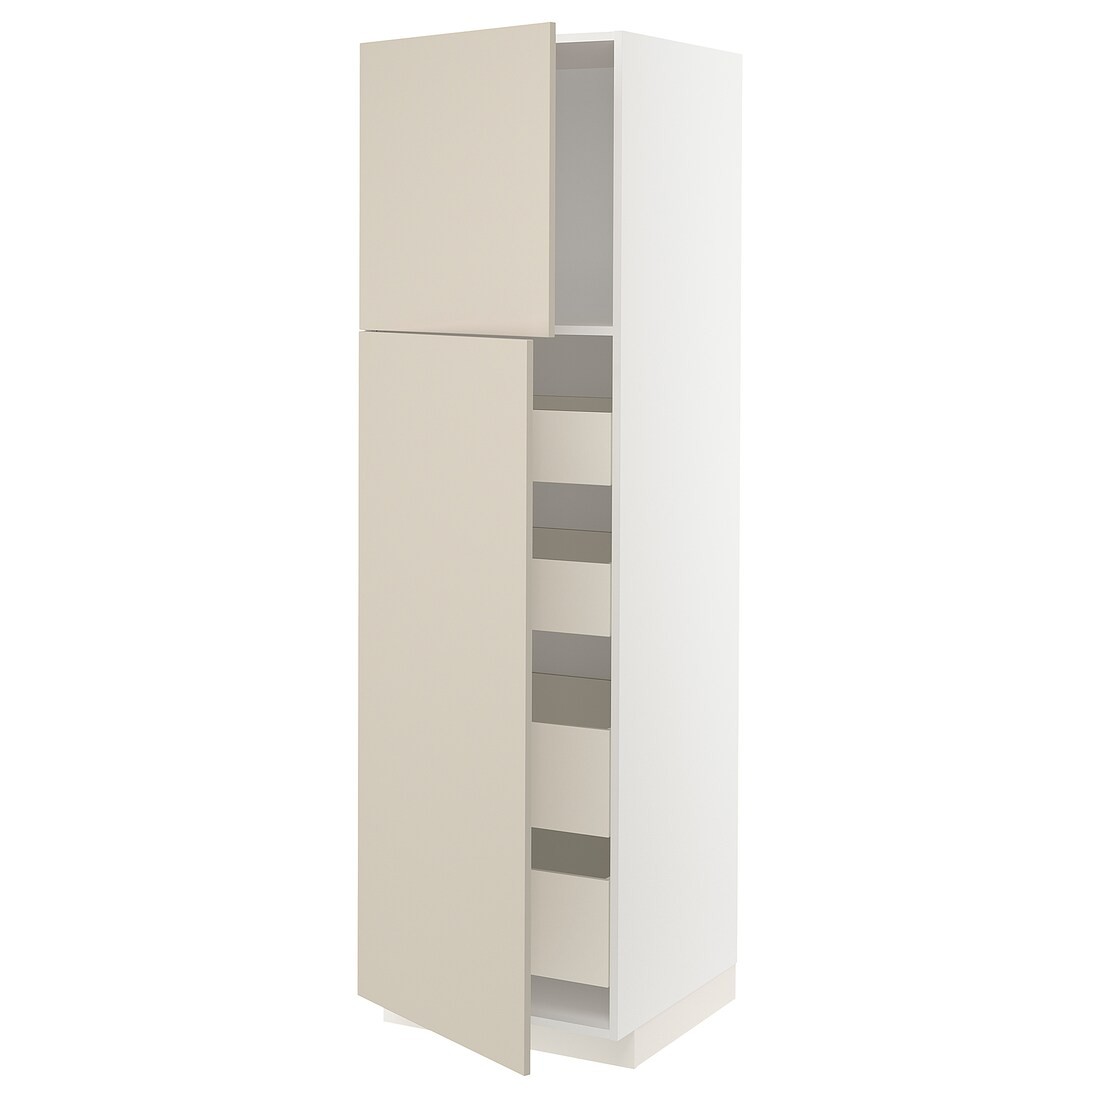 IKEA METOD МЕТОД / MAXIMERA МАКСИМЕРА Шкаф высокий 2 двери / 4 ящика, белый / Havstorp бежевый, 60x60x200 см 79455813 | 794.558.13